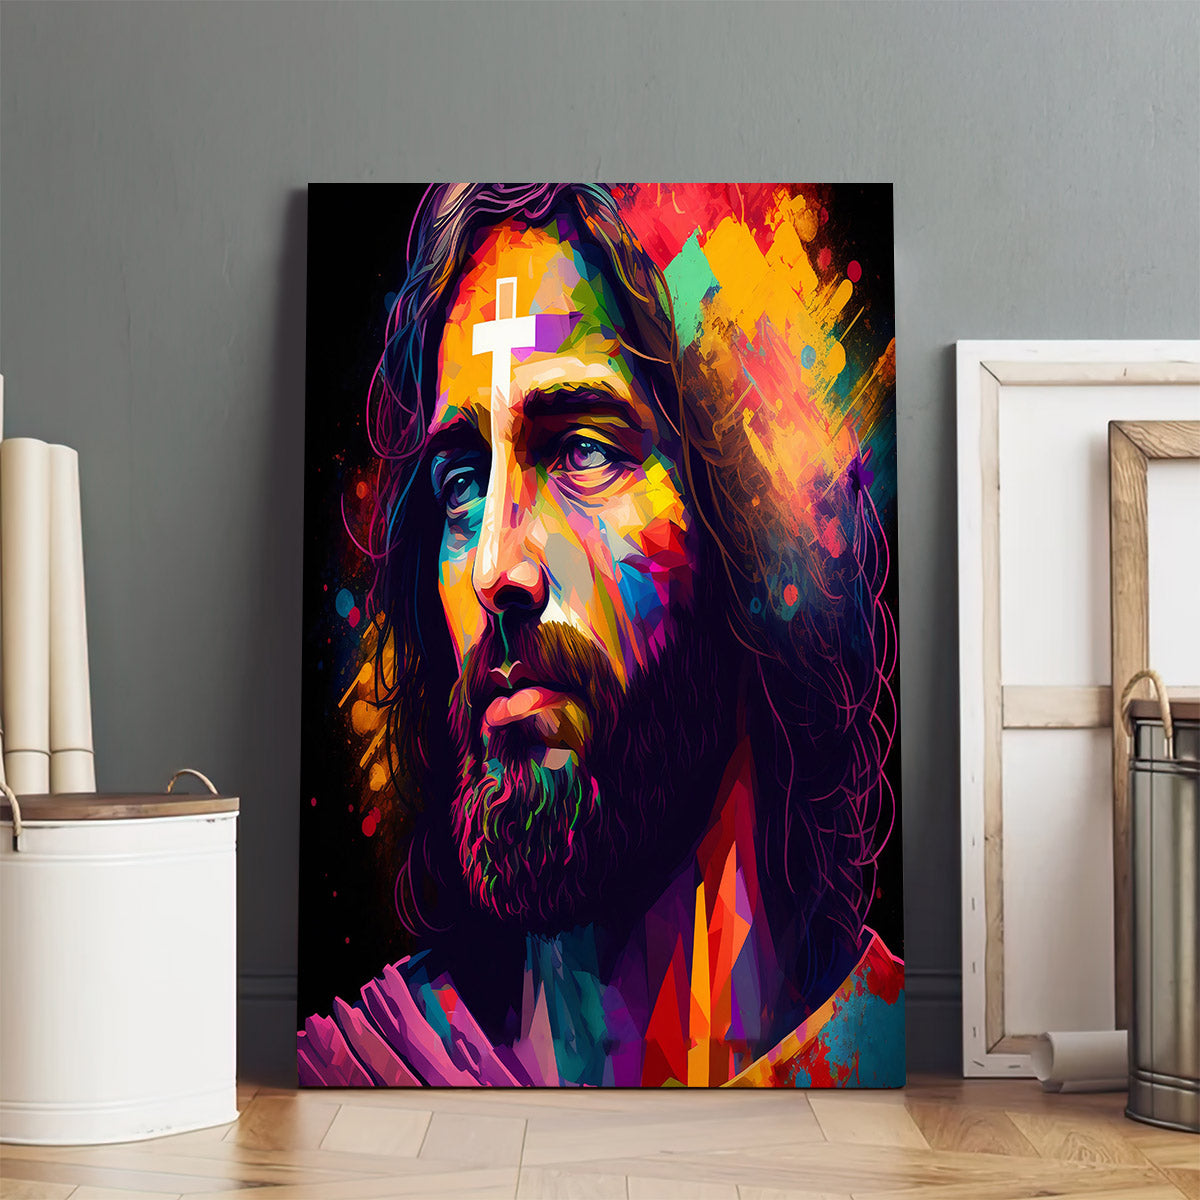 Jesus Christ Portrait - Jesus Canvas Art - Christian Wall Canvas